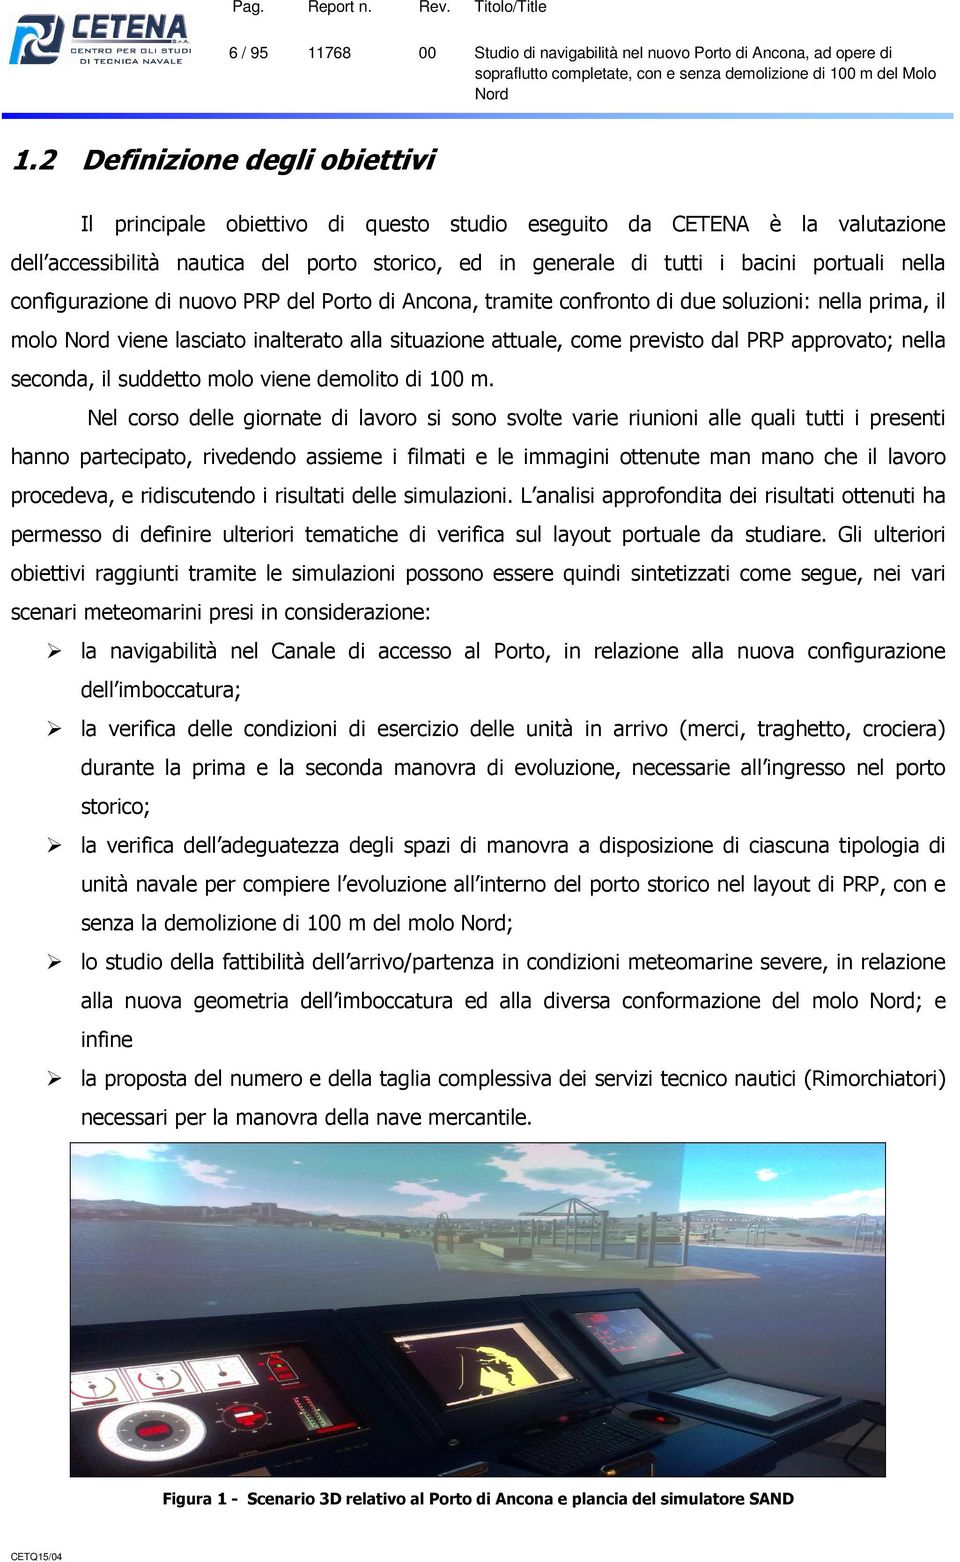 nella configurazione di nuovo PRP del Porto di Ancona, tramite confronto di due soluzioni: nella prima, il molo viene lasciato inalterato alla situazione attuale, come previsto dal PRP approvato;